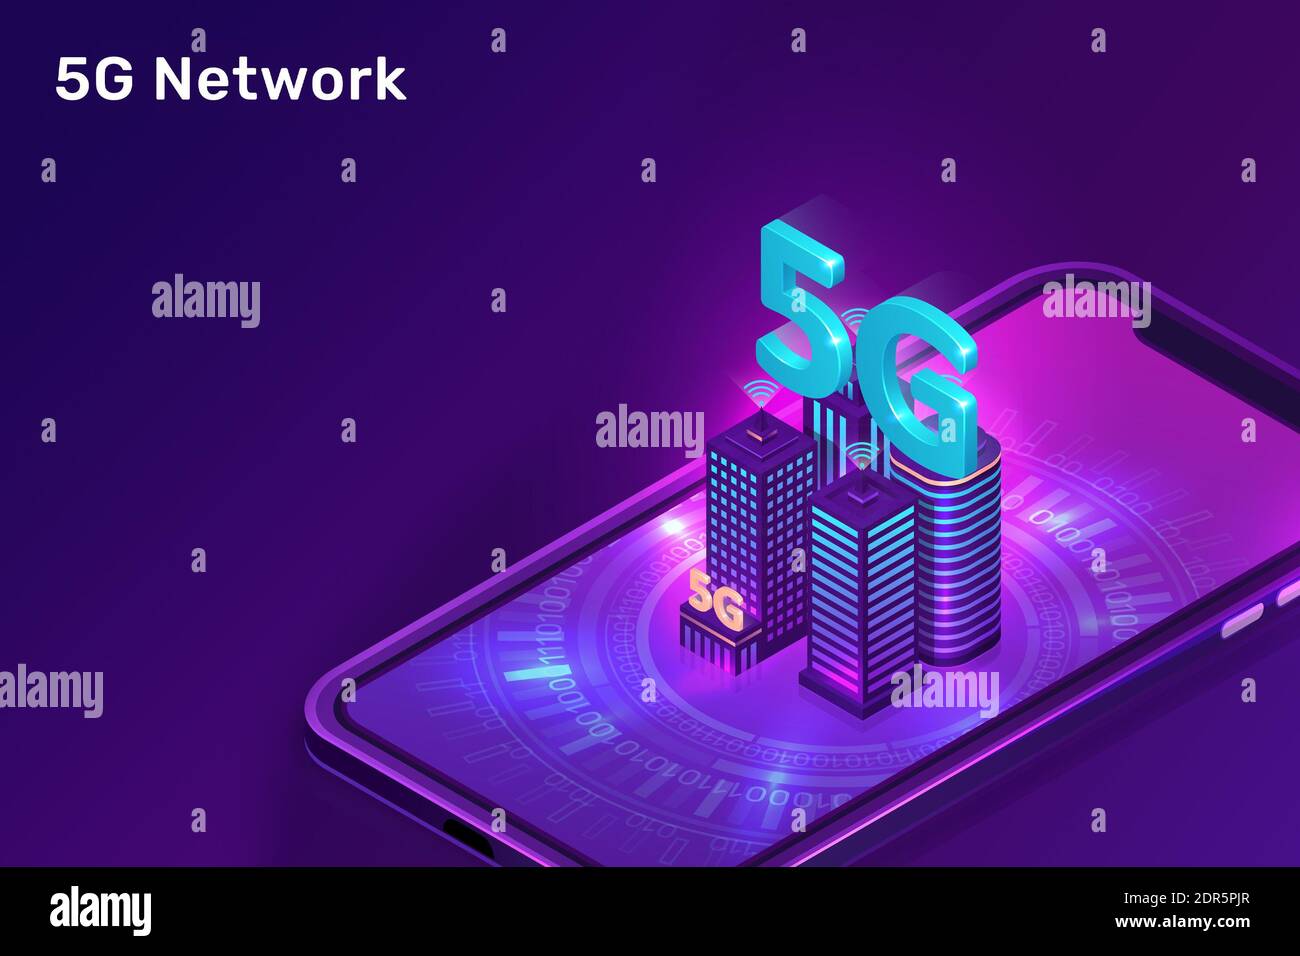 Conexión a Internet de alta velocidad 5G de próxima generación Foto de stock